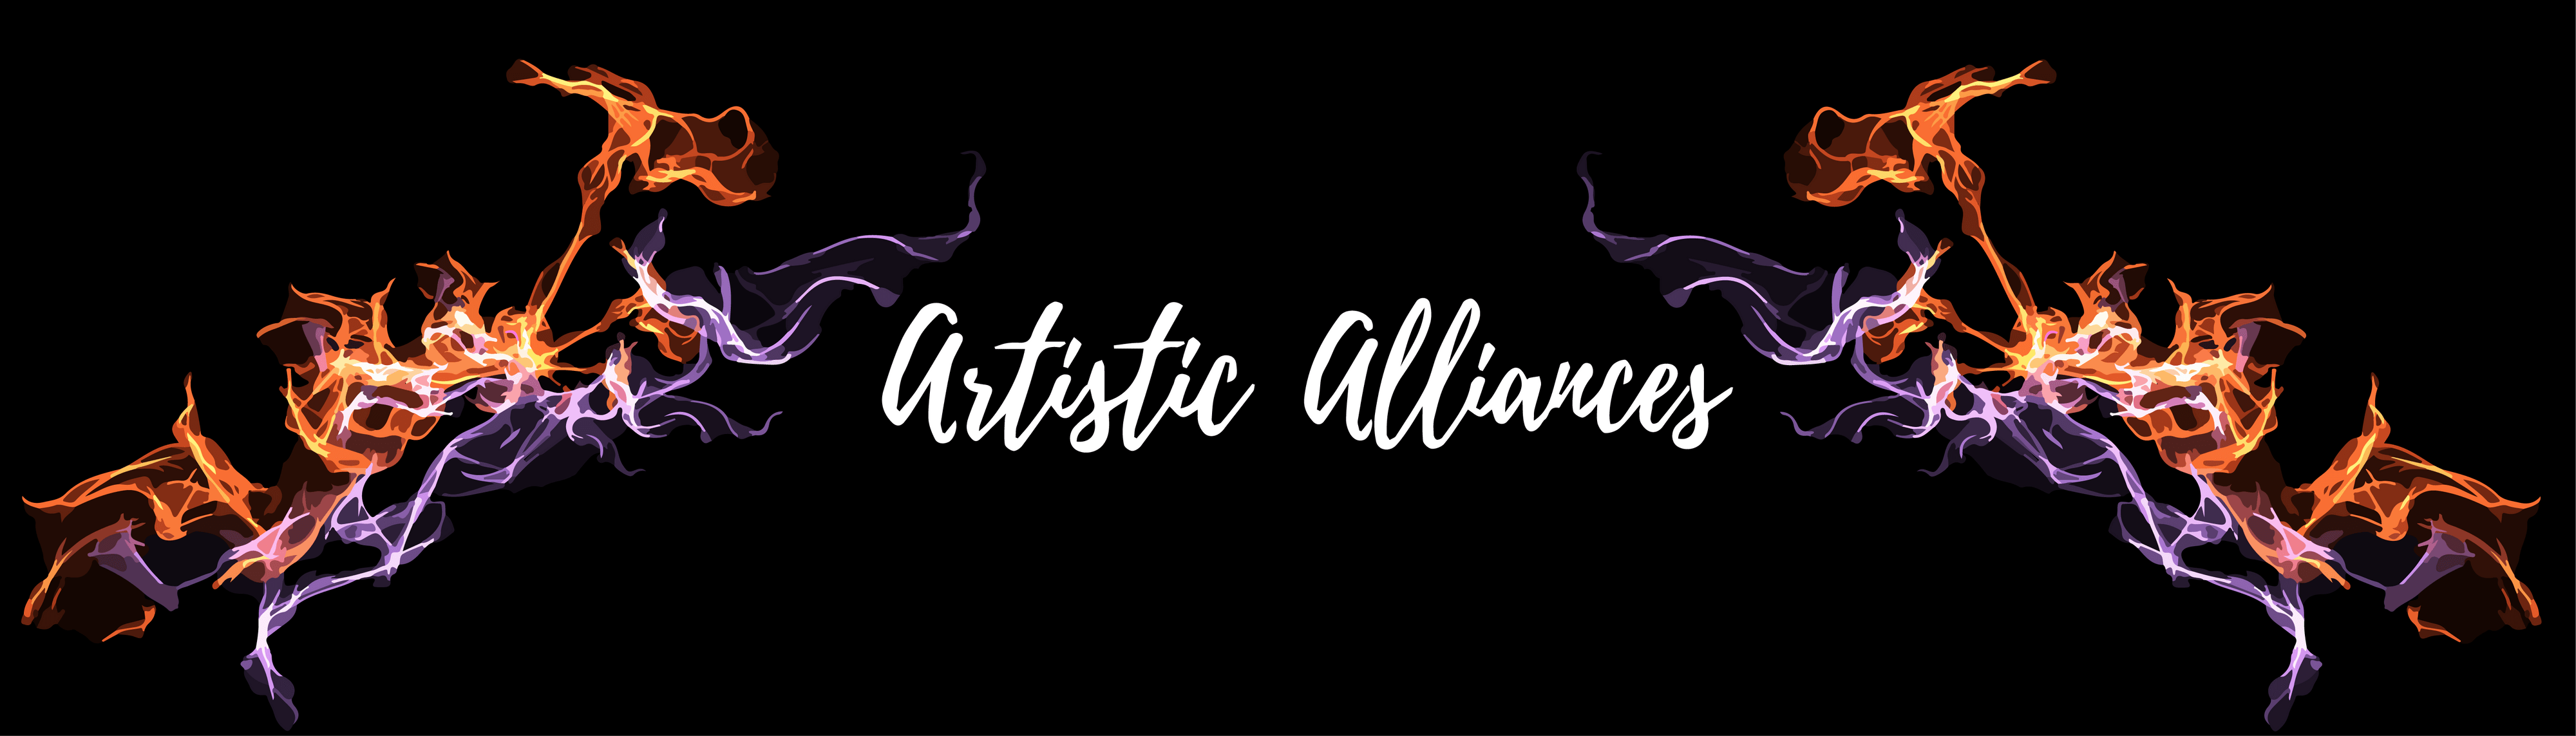 ArtisticAlliances banner